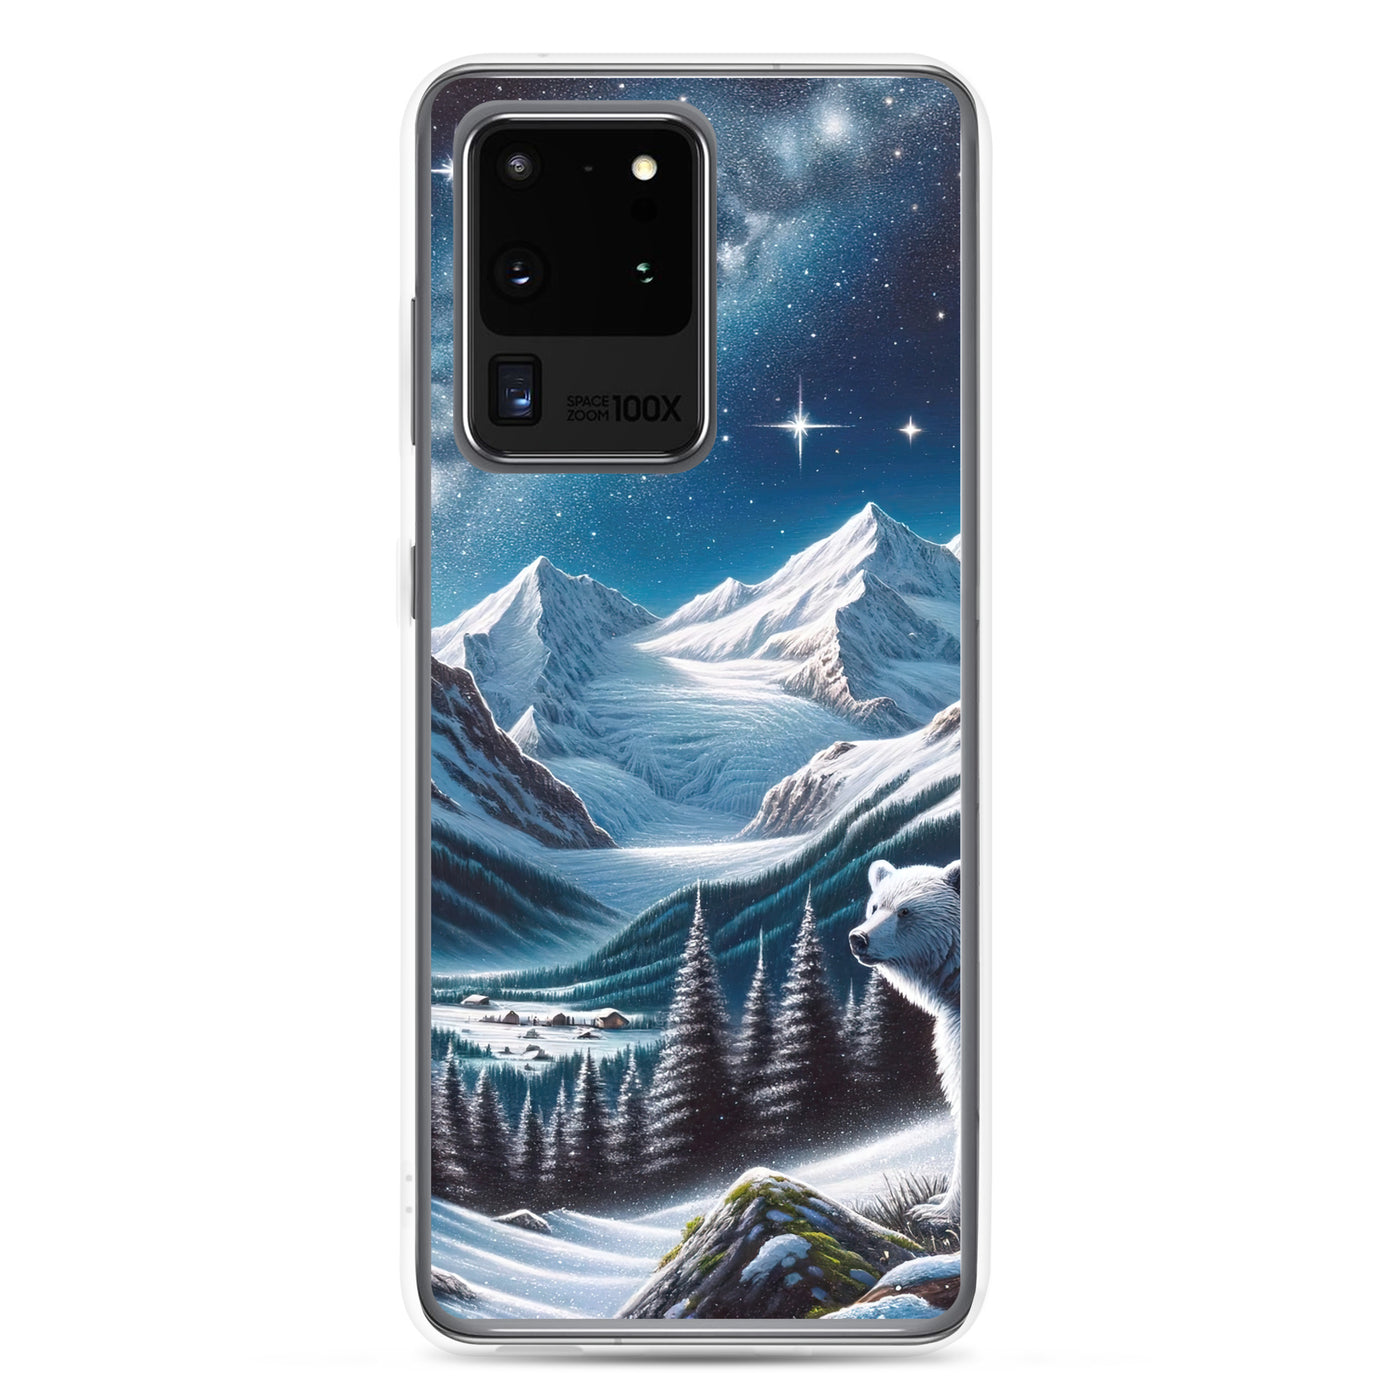 Sternennacht und Eisbär: Acrylgemälde mit Milchstraße, Alpen und schneebedeckte Gipfel - Samsung Schutzhülle (durchsichtig) camping xxx yyy zzz Samsung Galaxy S20 Ultra